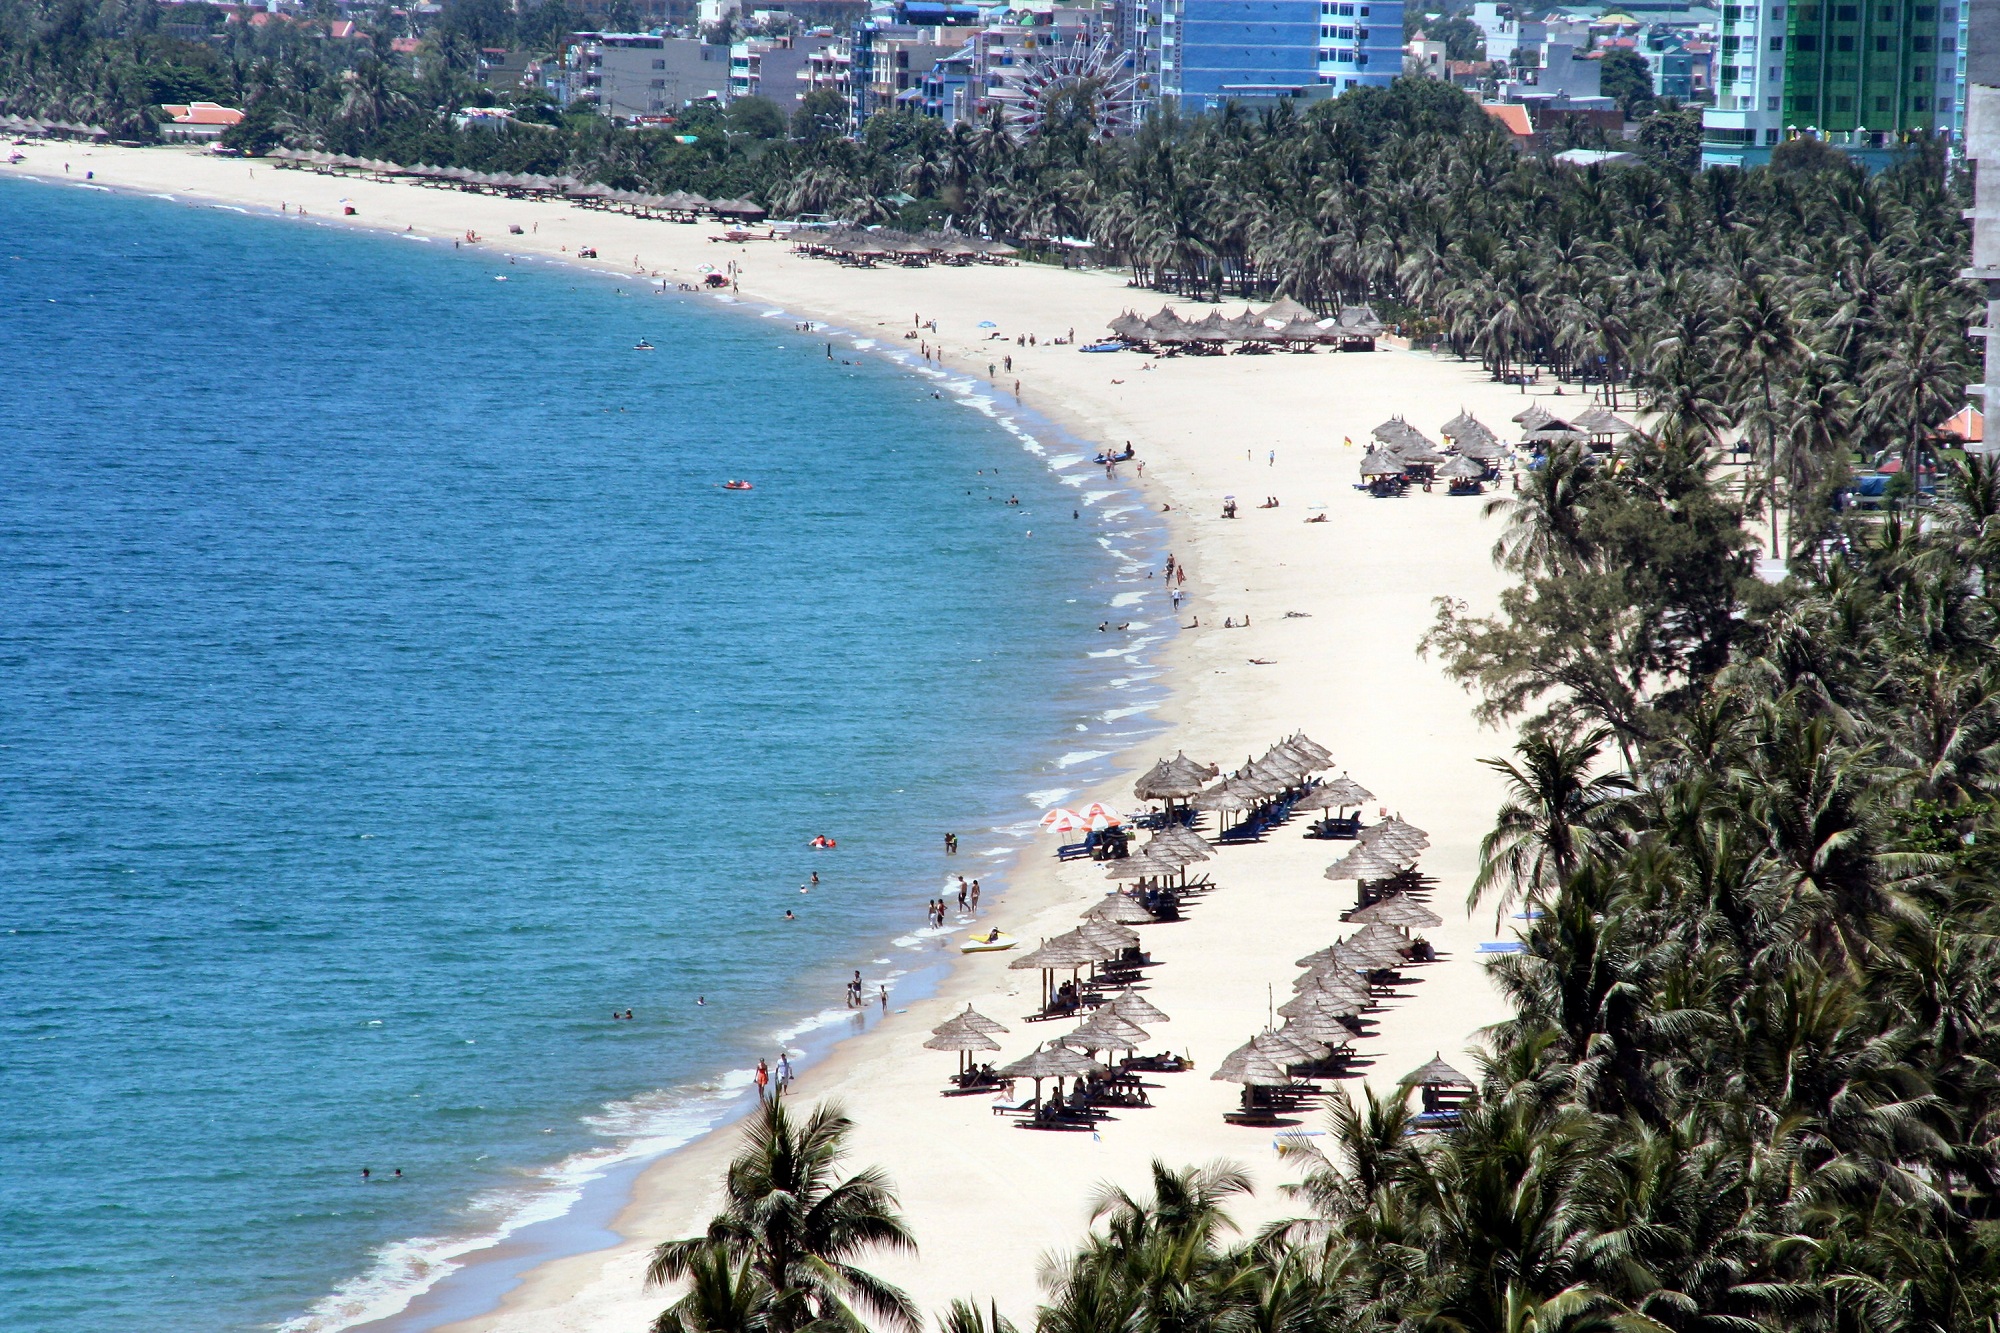 Bãi biển Mỹ Khê Đà Nẵng